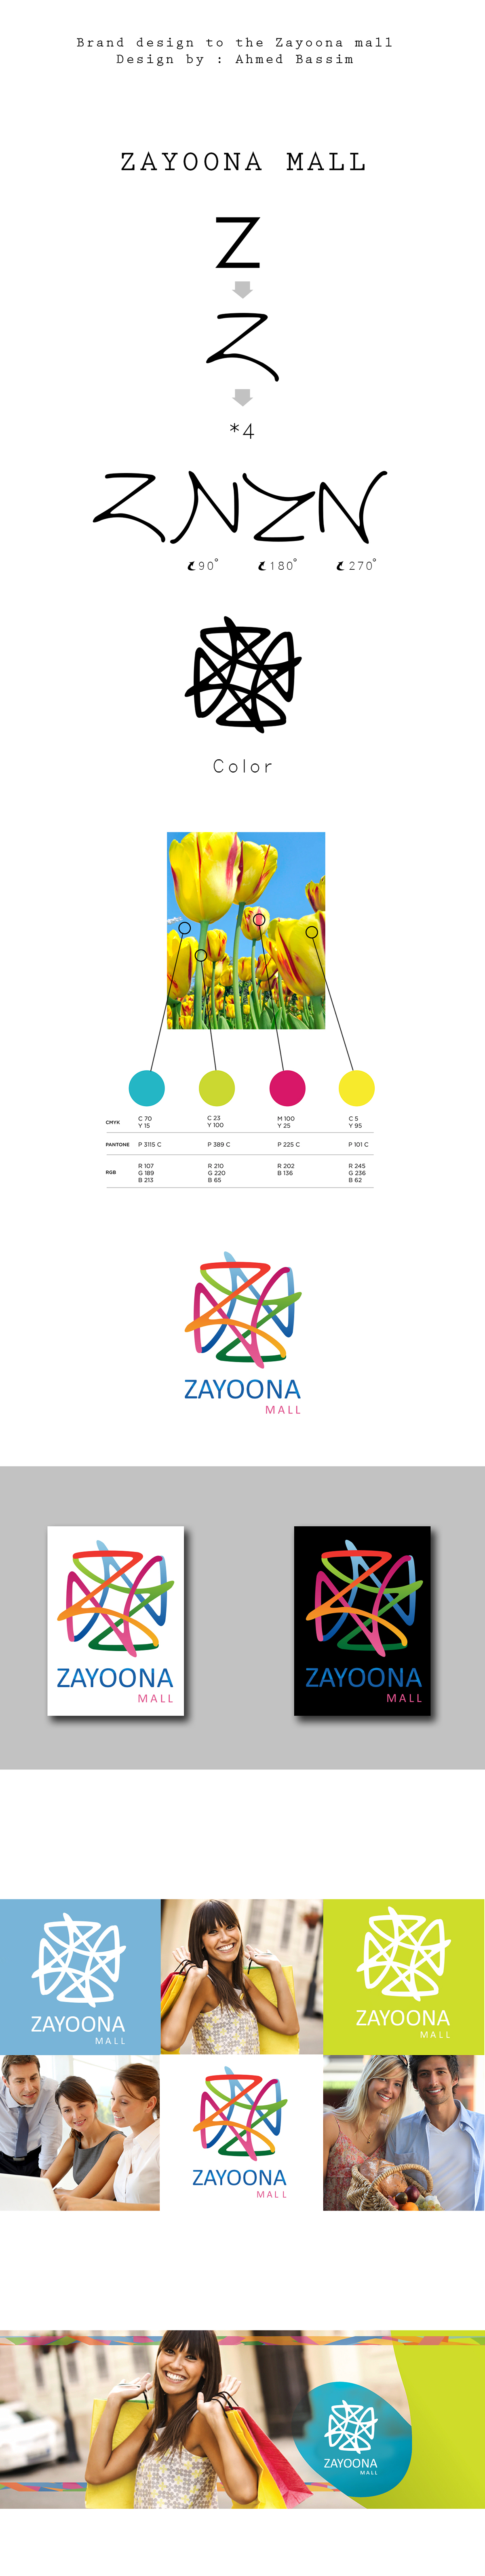 logo fv Logotype brand zayoona mall zayoona_mall business card brand identity corporate minimal zayoona mall